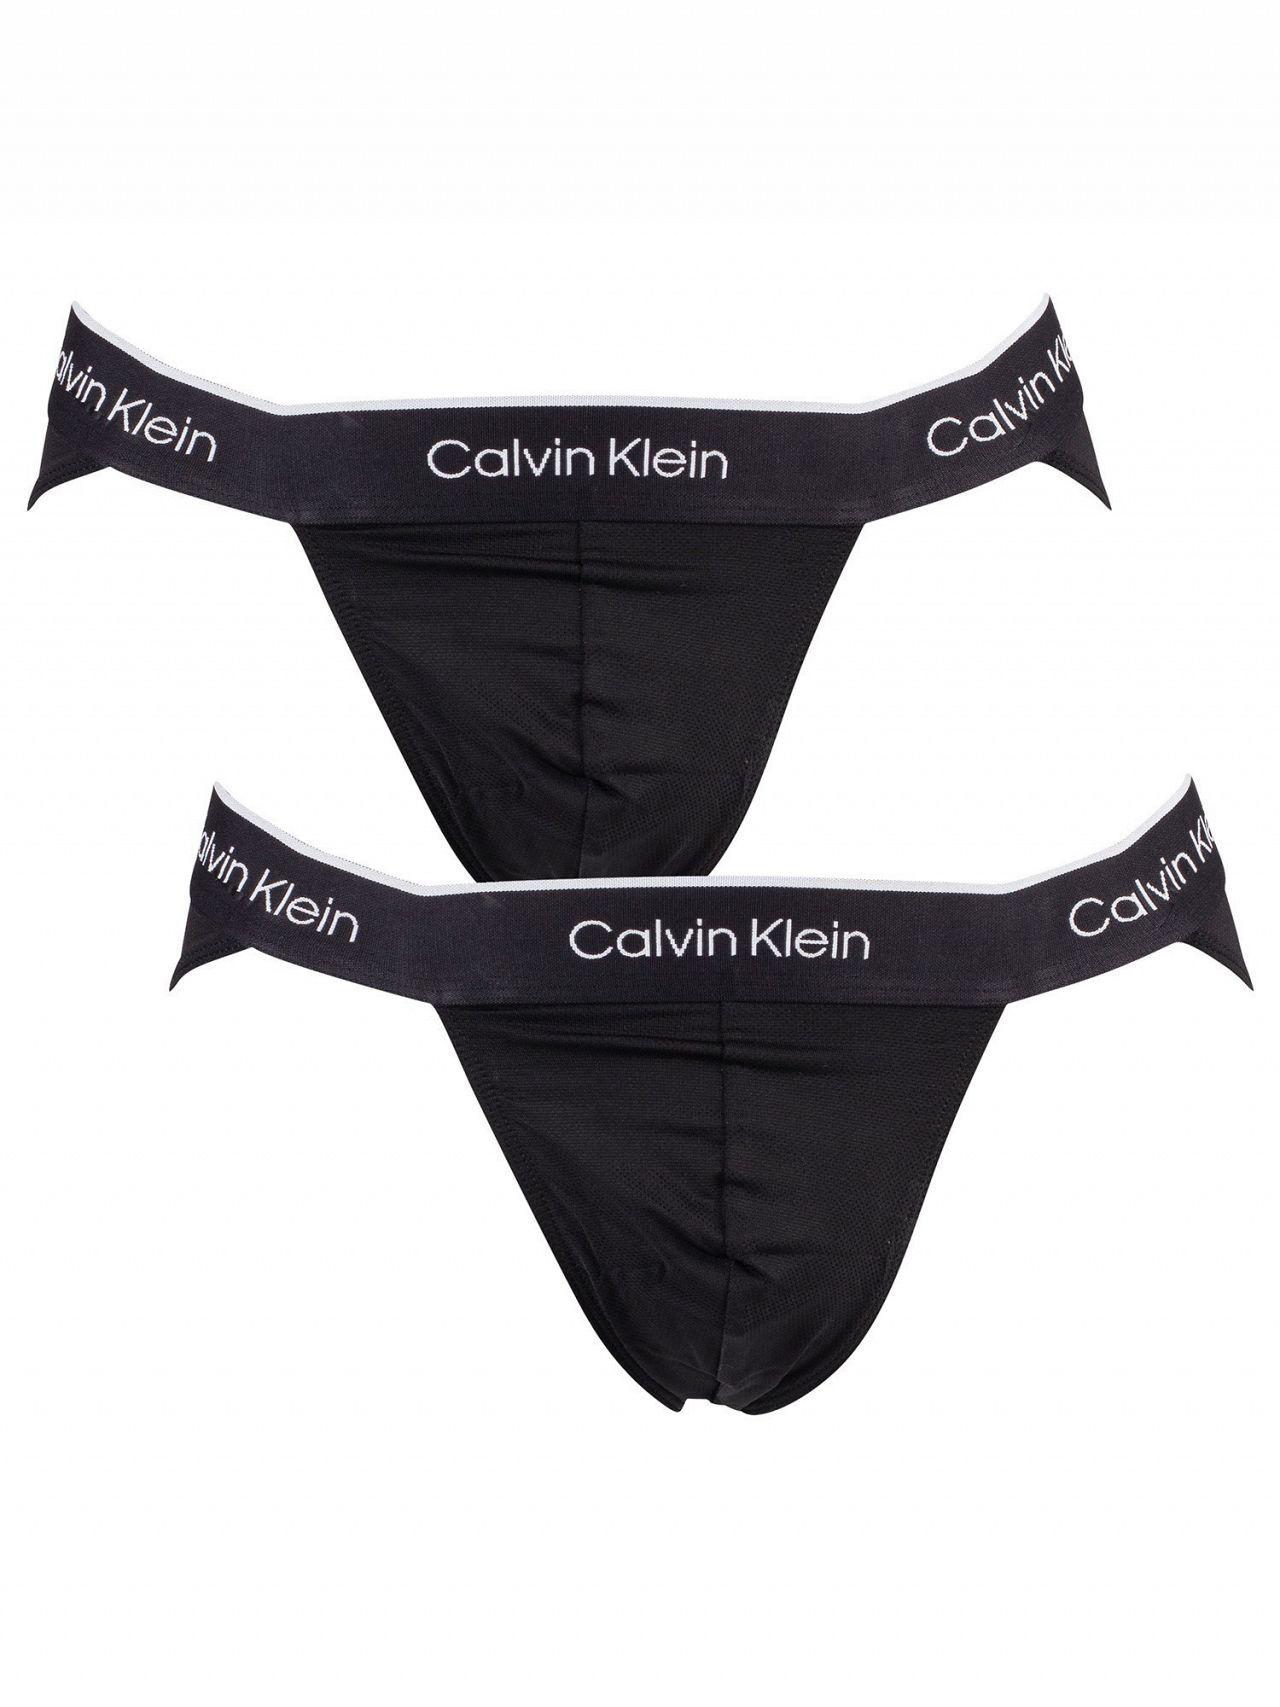 Calvin Klein Black 2 Pack Pro Air Sport Briefs Men |